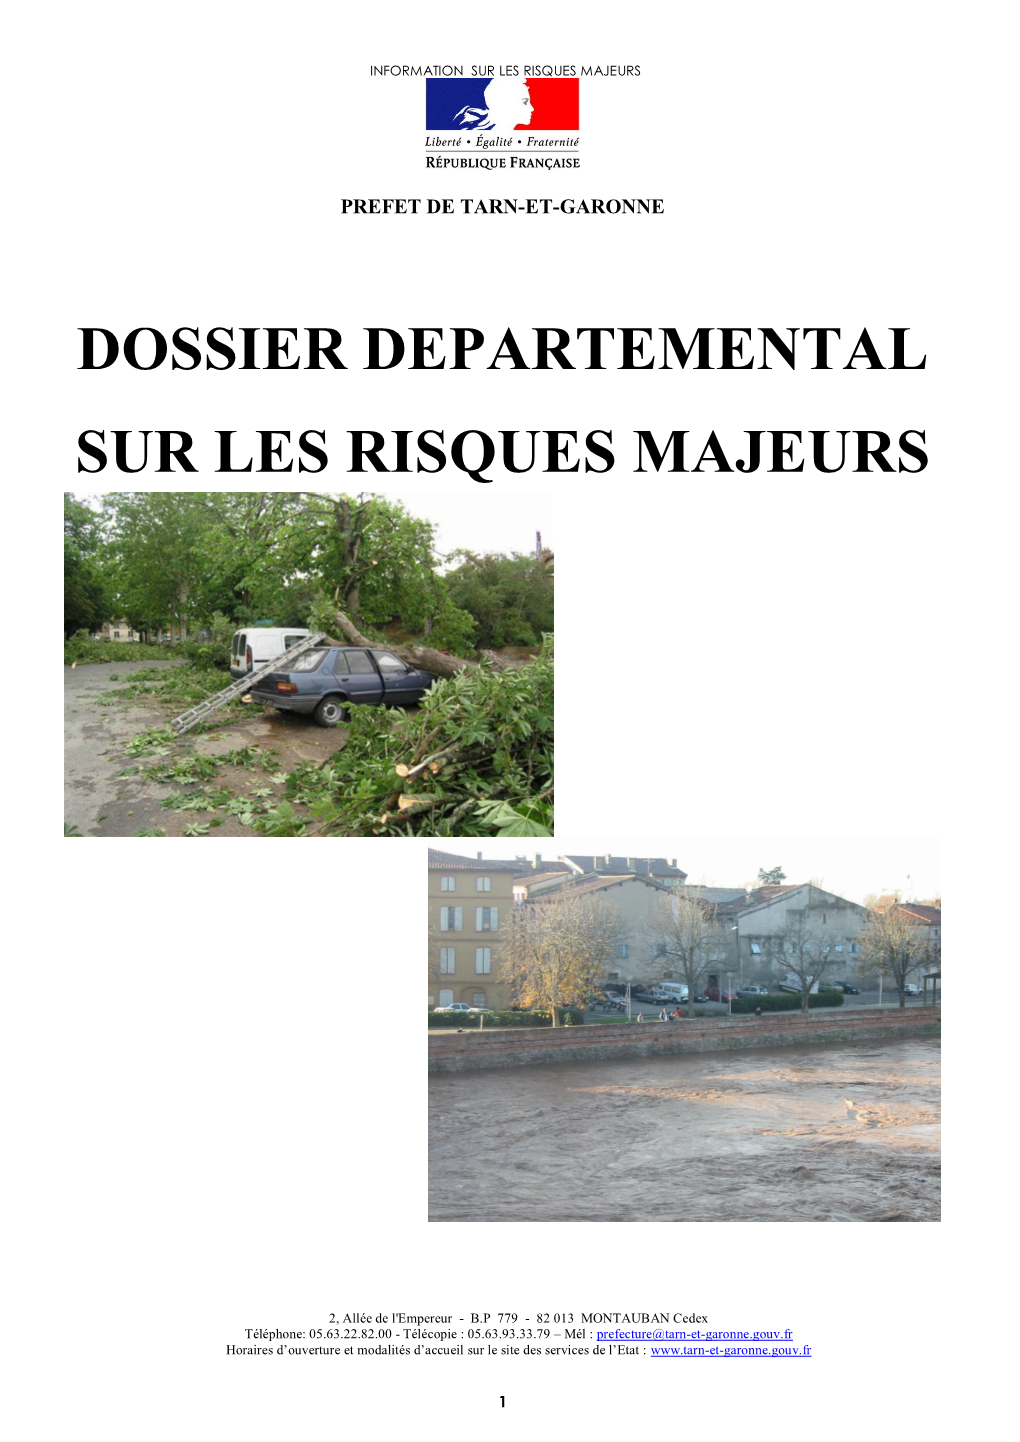 Dossier Departemental Sur Les Risques Majeurs